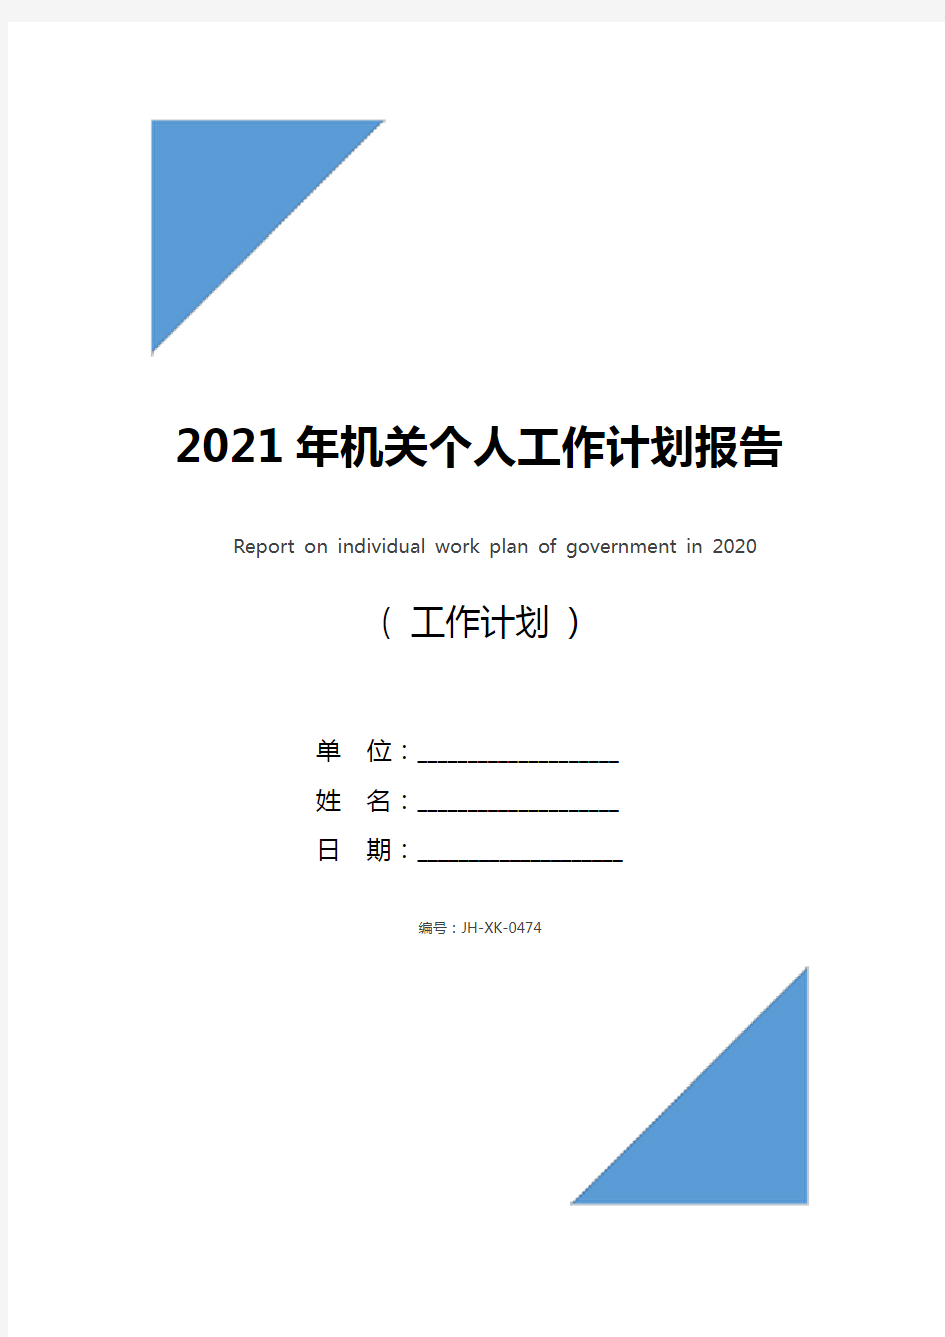 2021年机关个人工作计划报告(标准版)